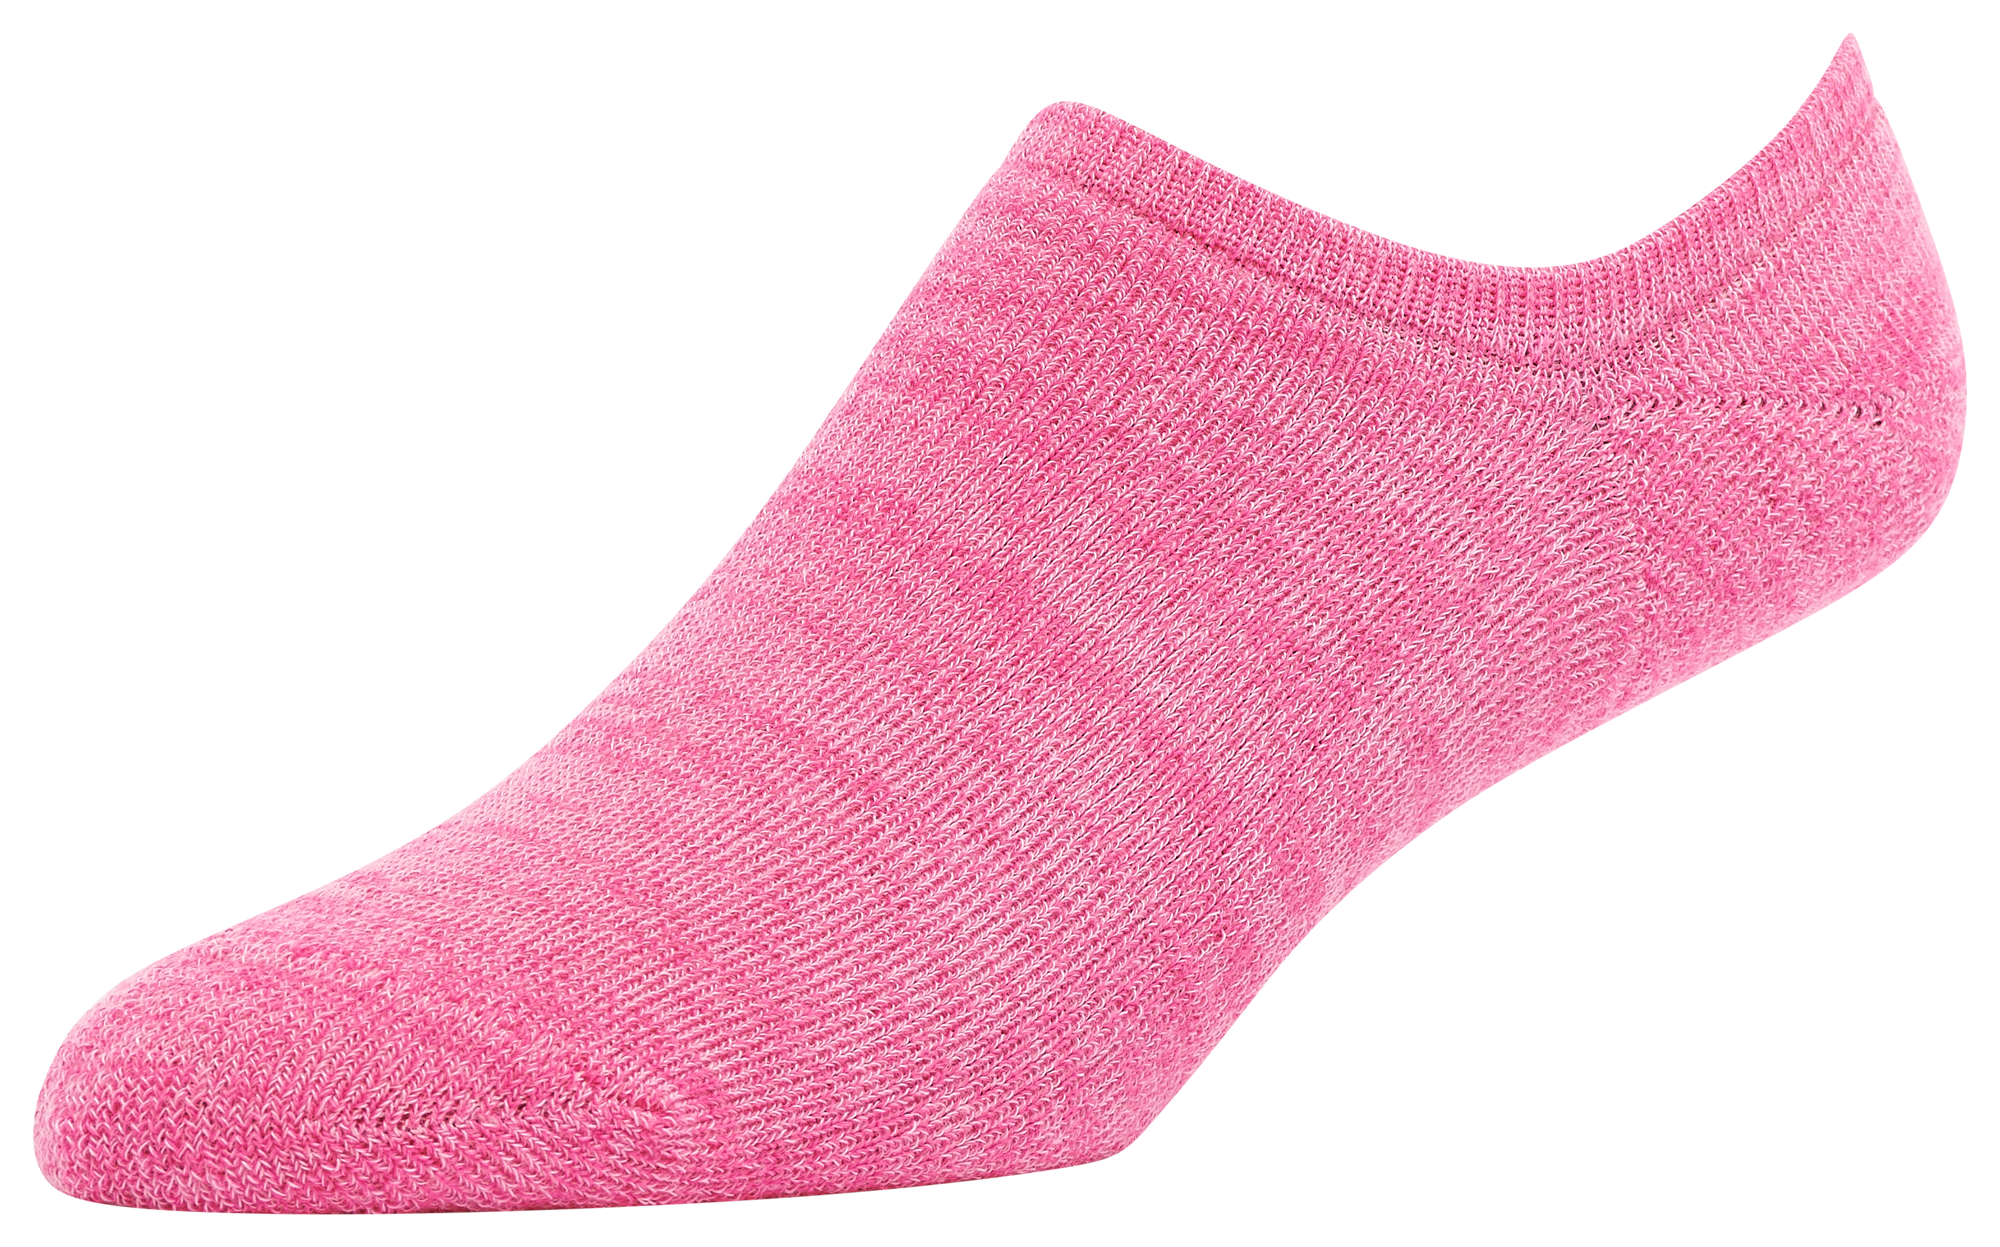 CSG Brights 5 Pack Liner Socks